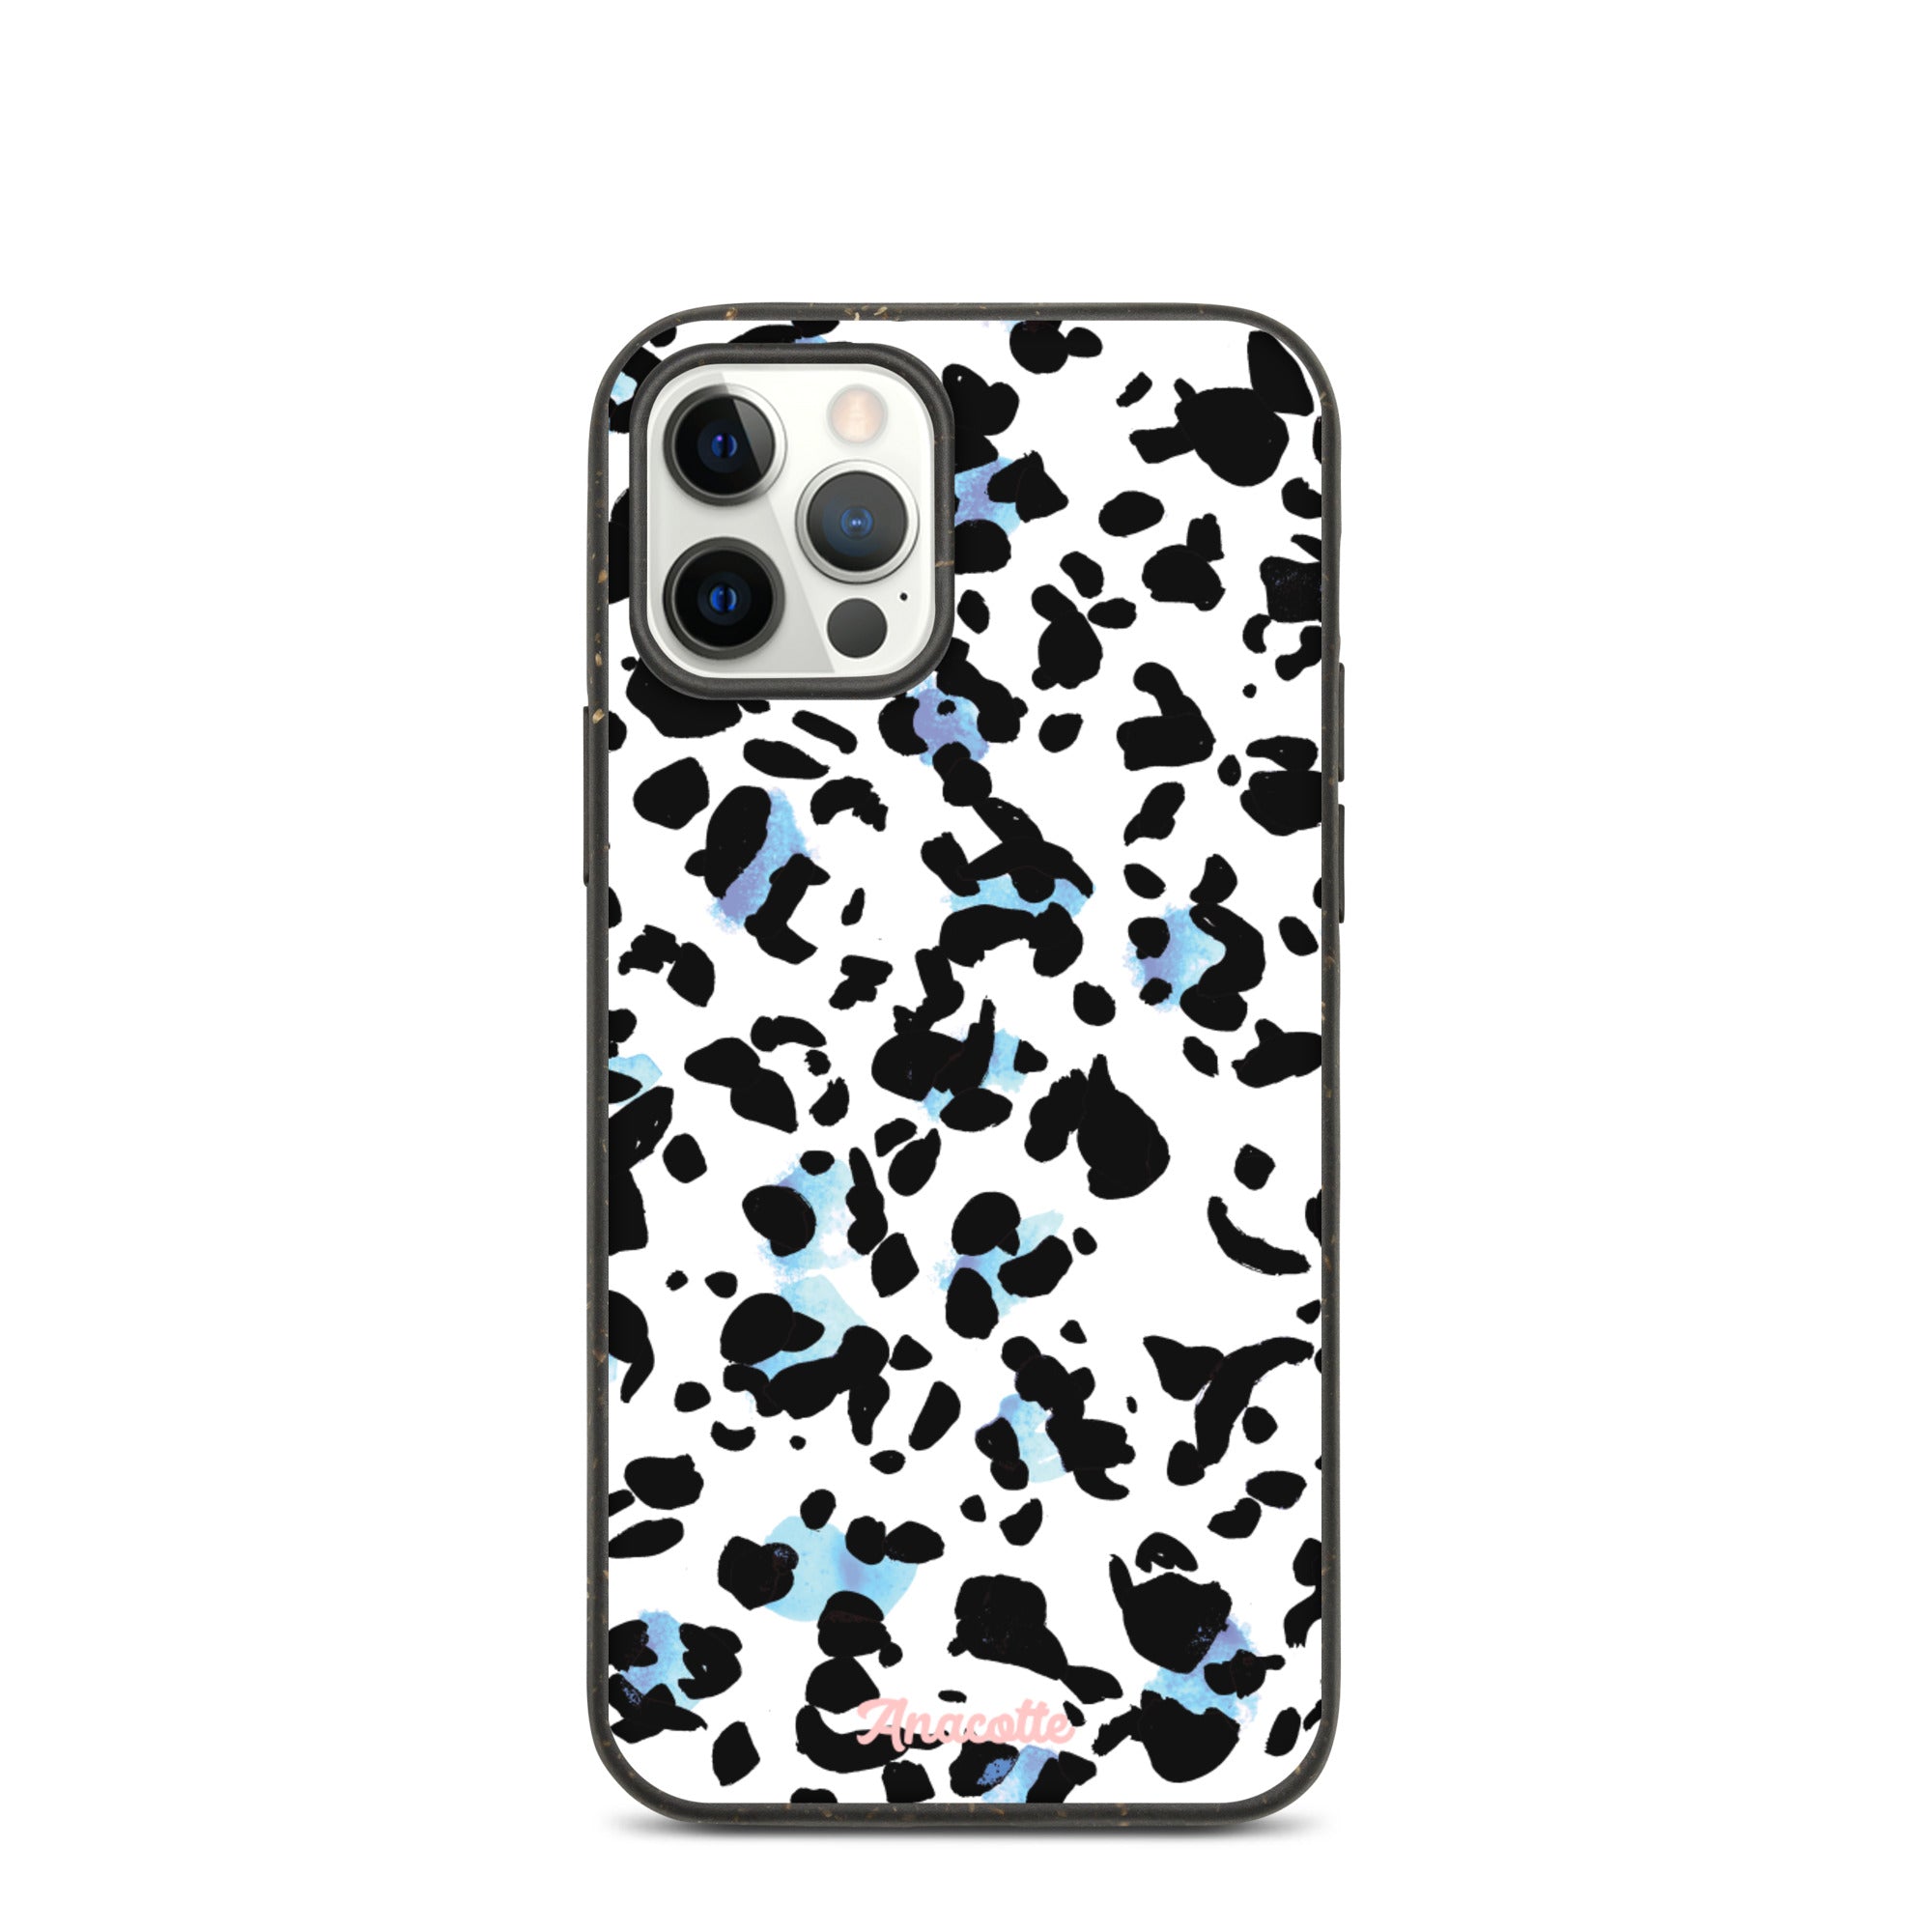 Anacotte Stylish Eco-Friendly Sustainable iPhone case